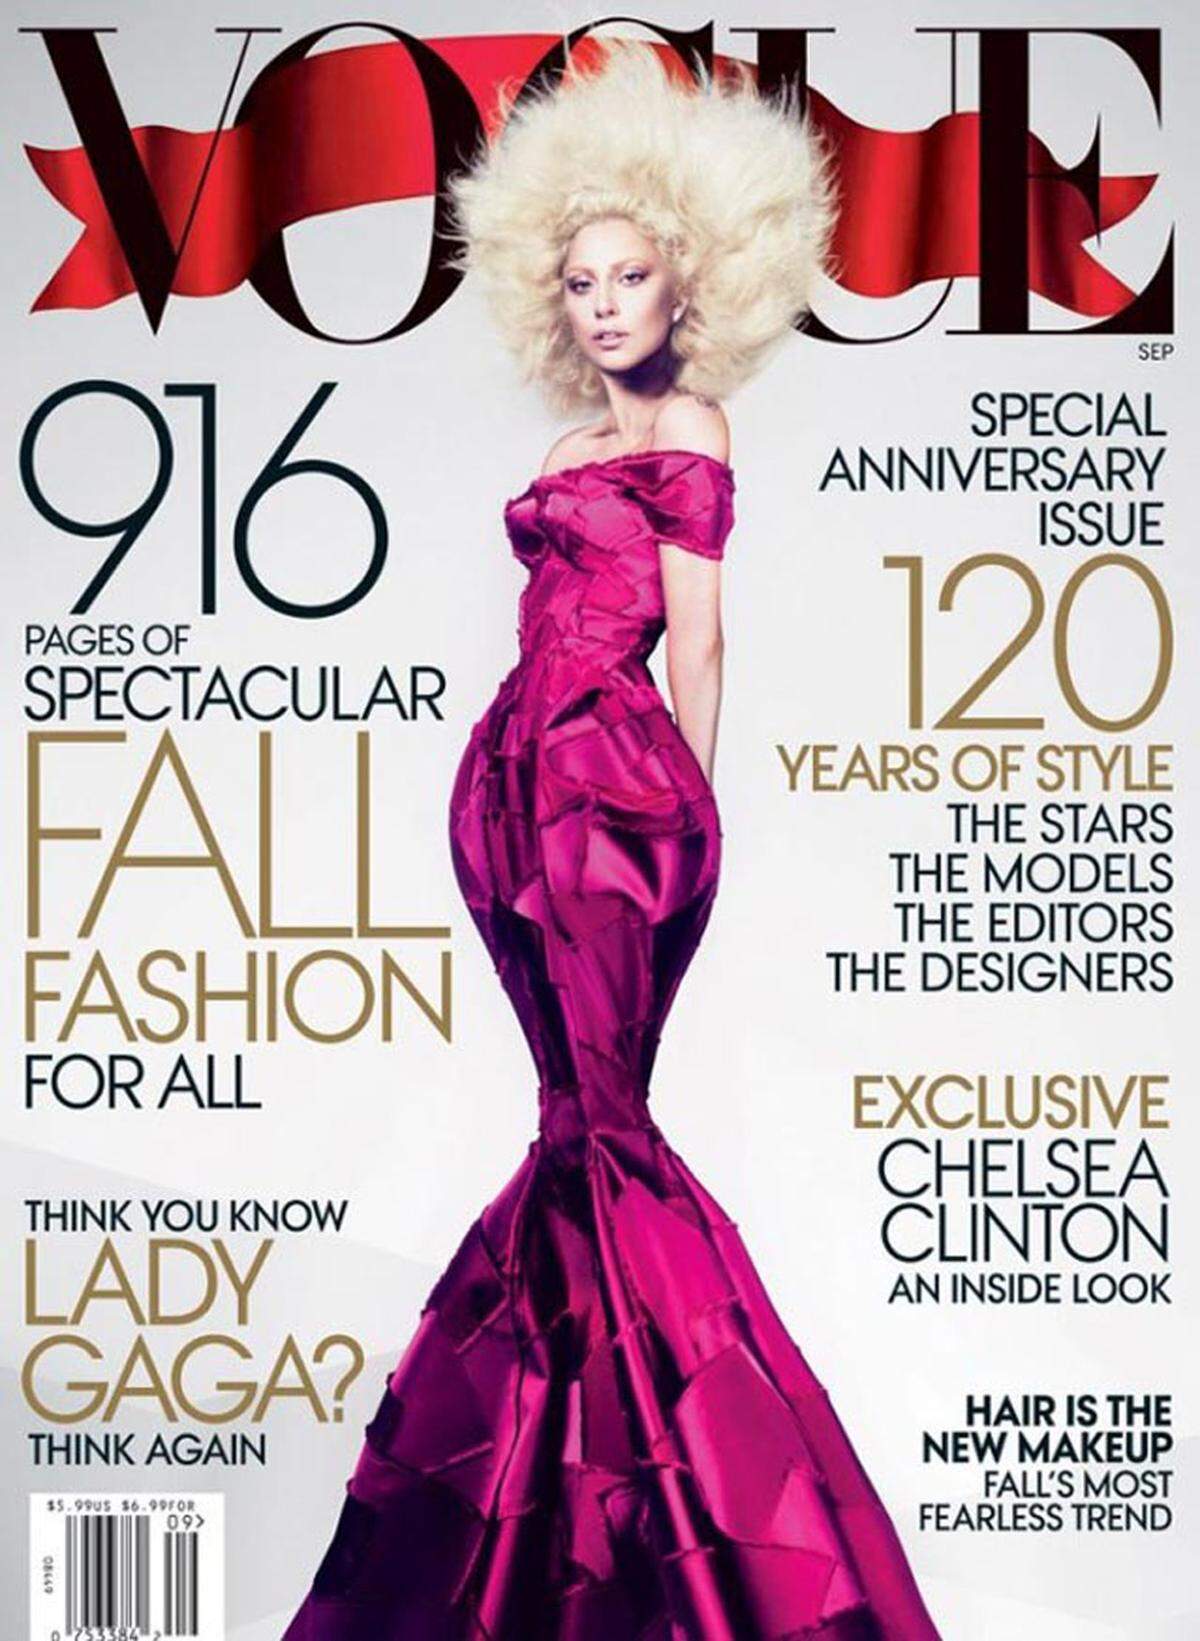 Mit einer langgezogenen und extrem dünne Silhouette wurde Lady Gaga am Vogue-Cover abgebildet.